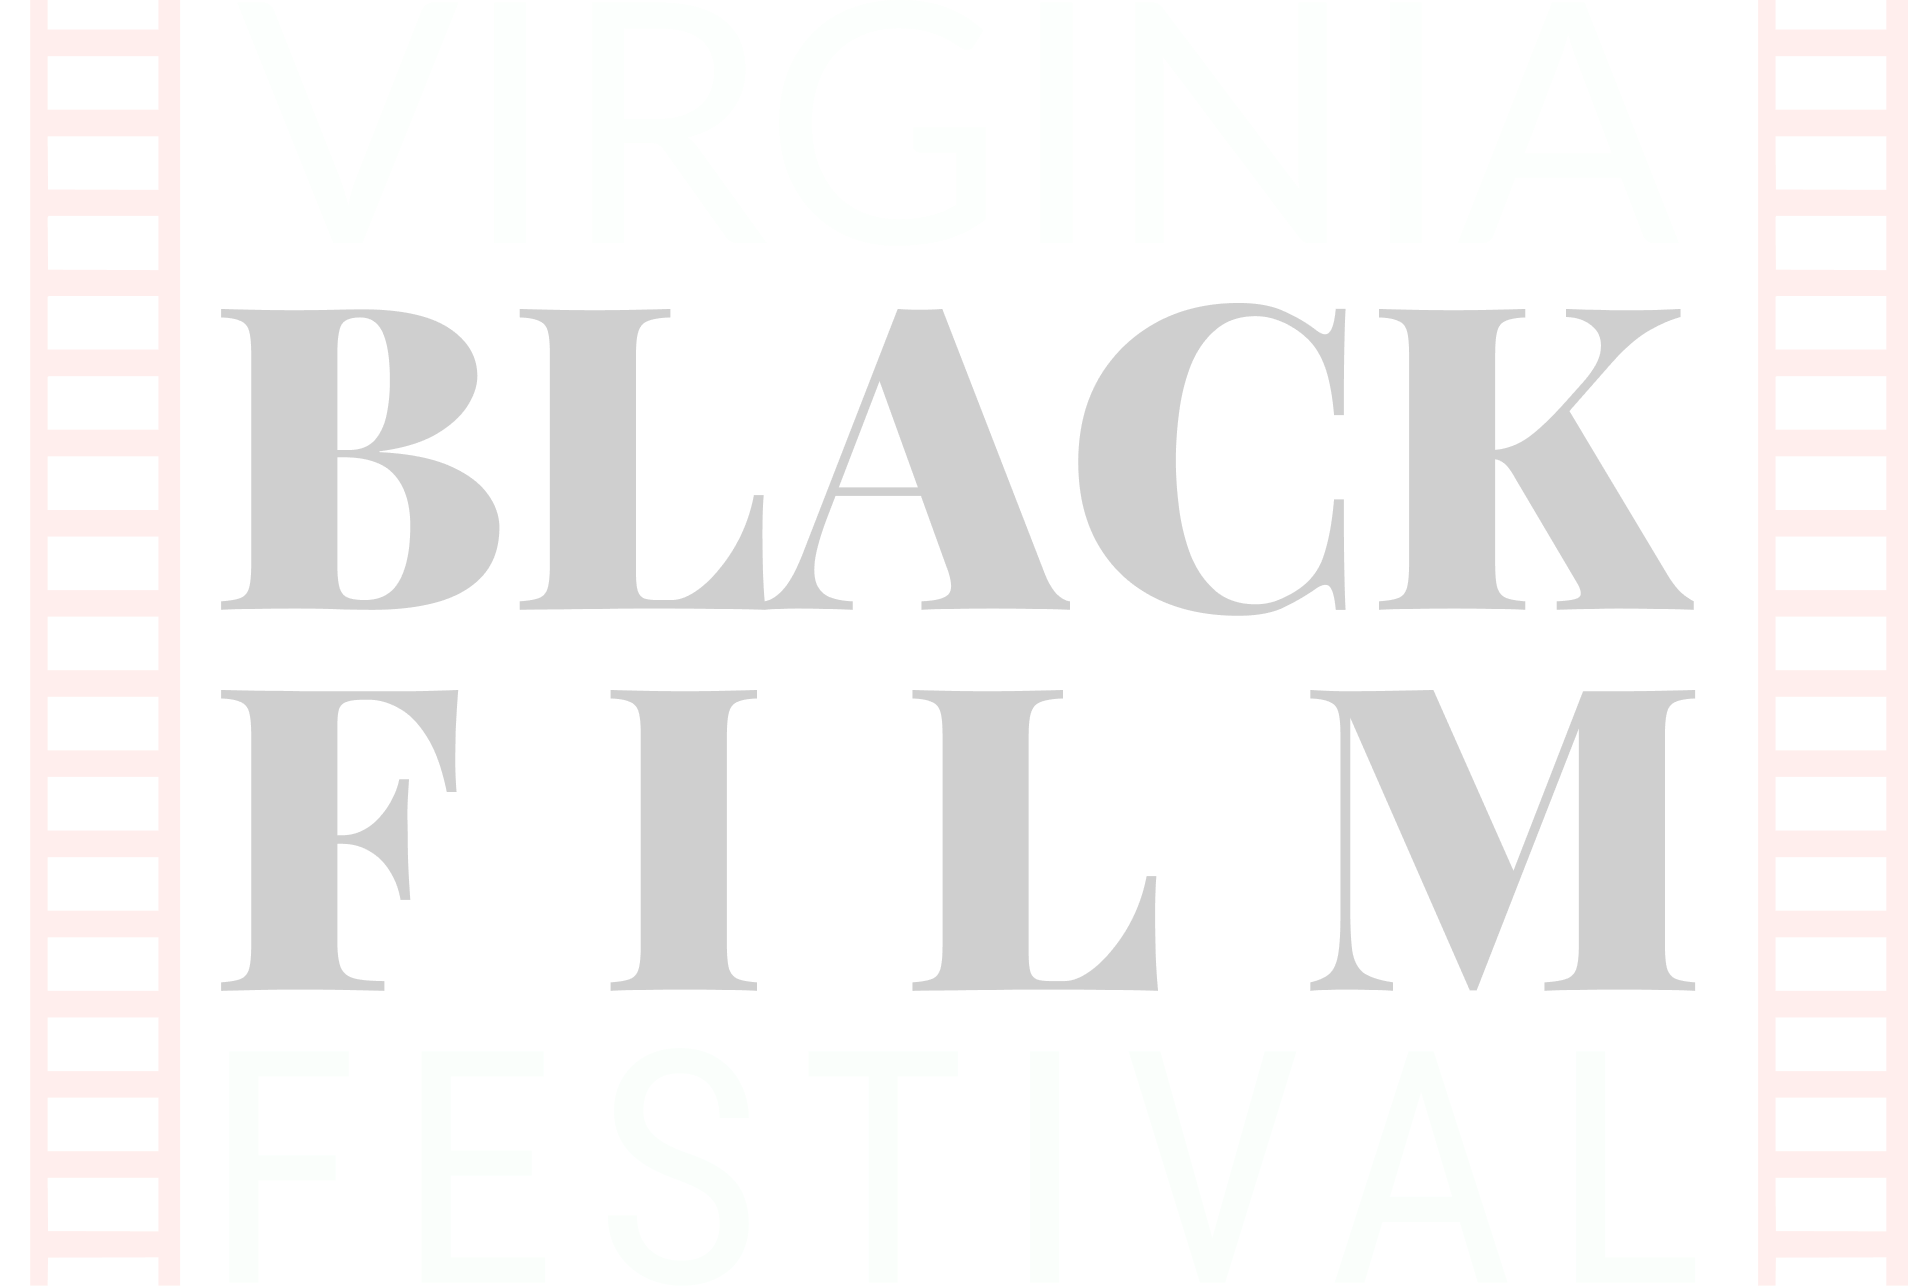 The Virginia Black Film Festival